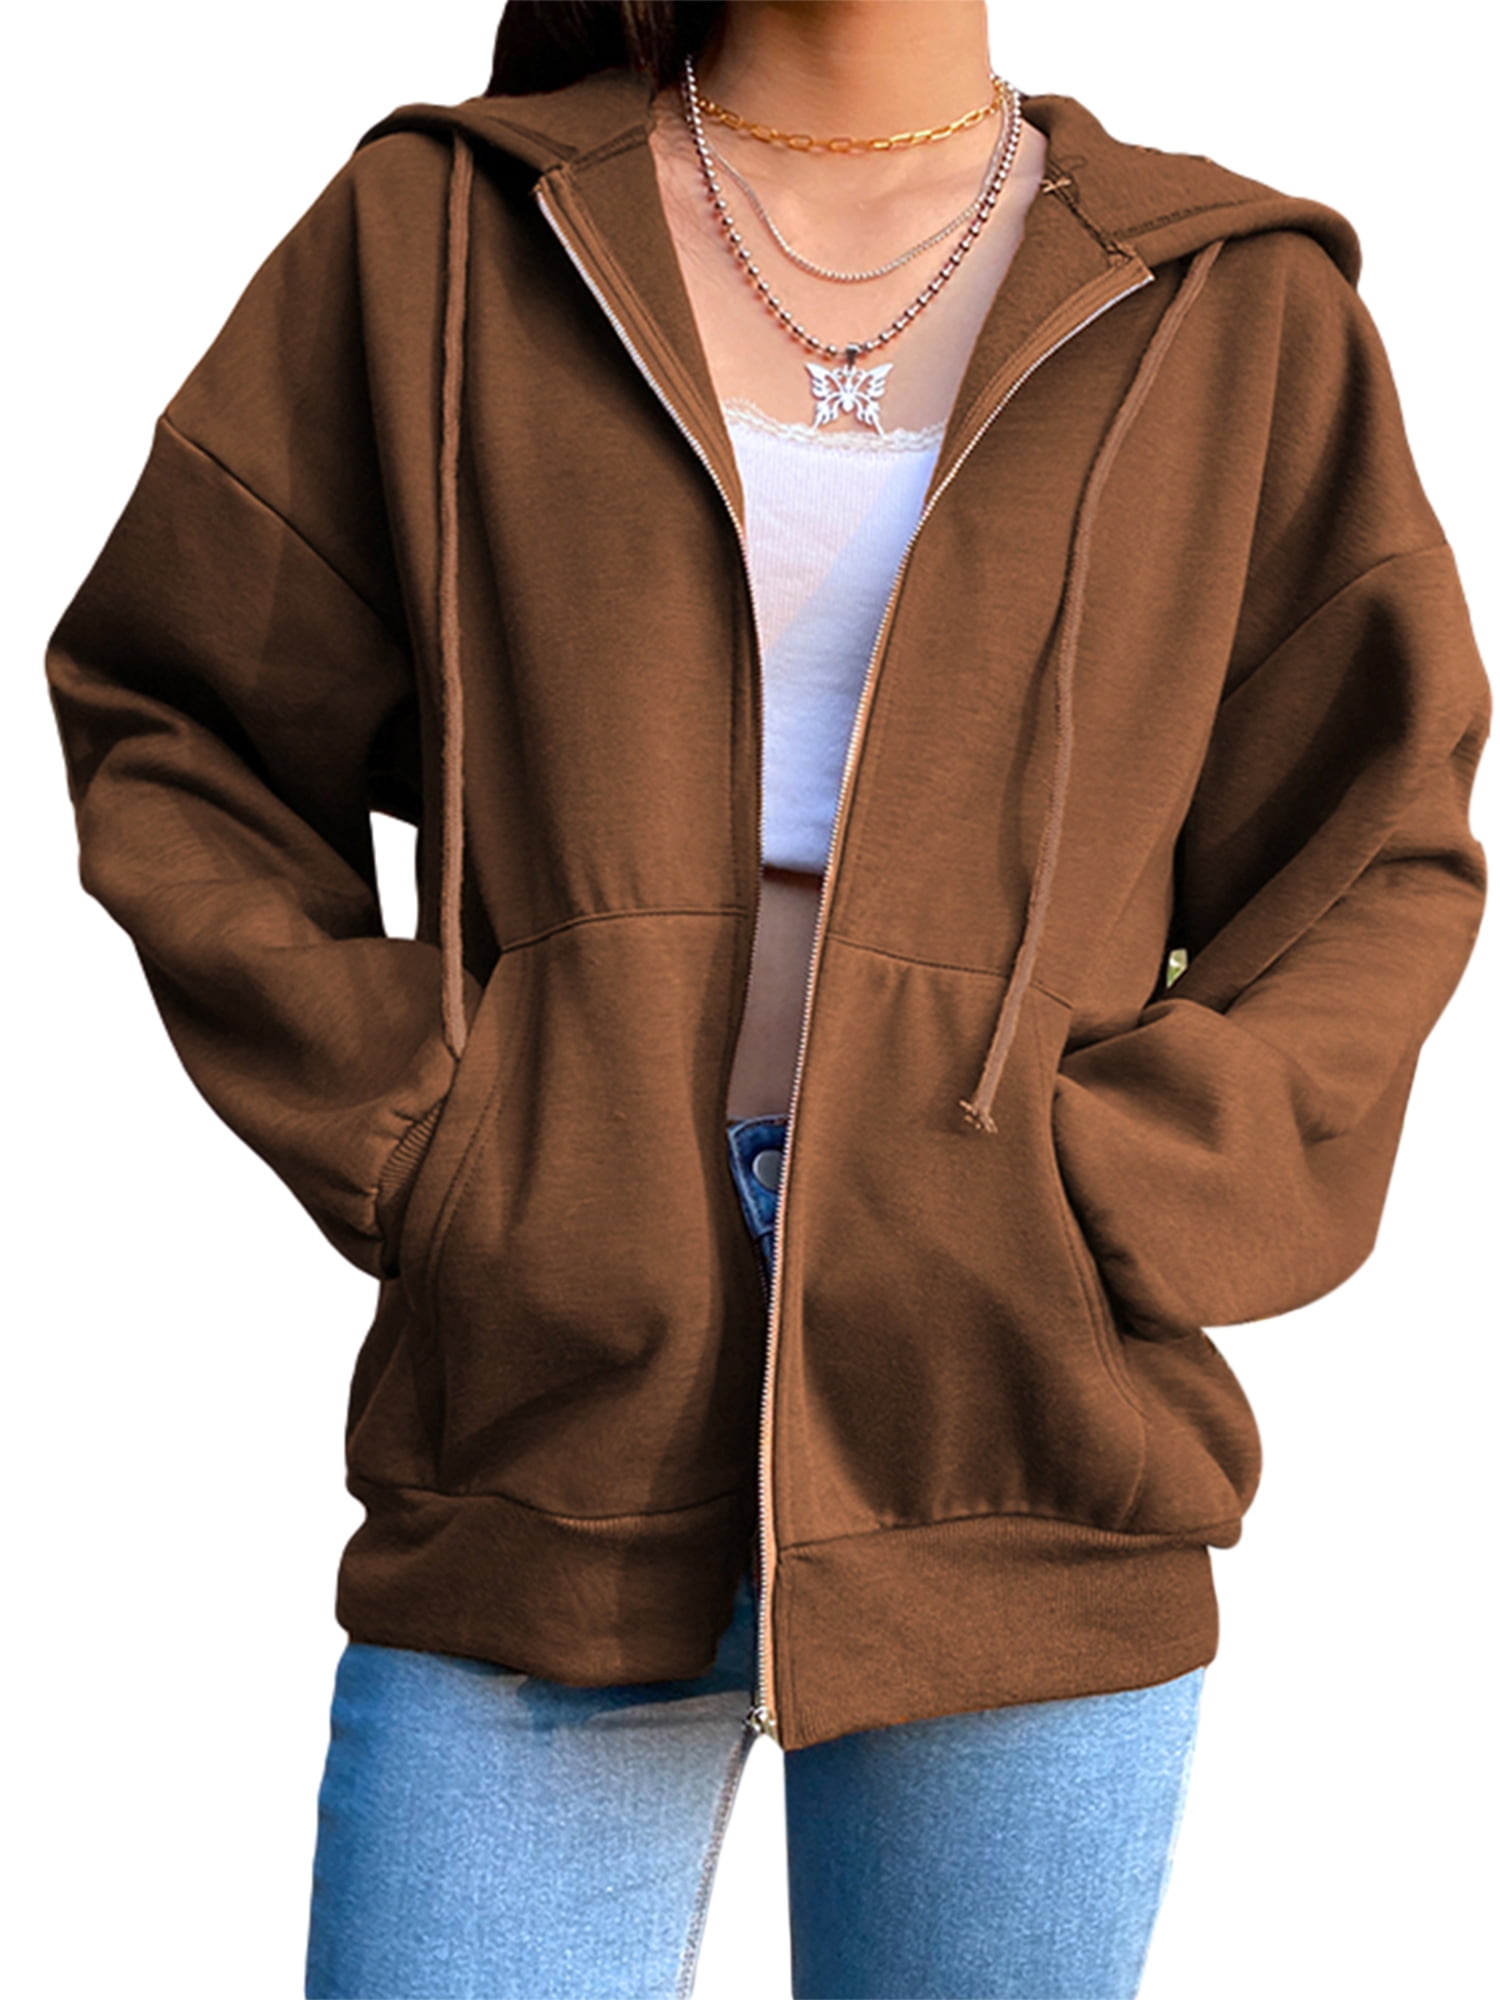 Oversize Hoodies Women/Men 3D Sweatshirt Hoodies Unisex Hiphop Jacket Zippper Hoody